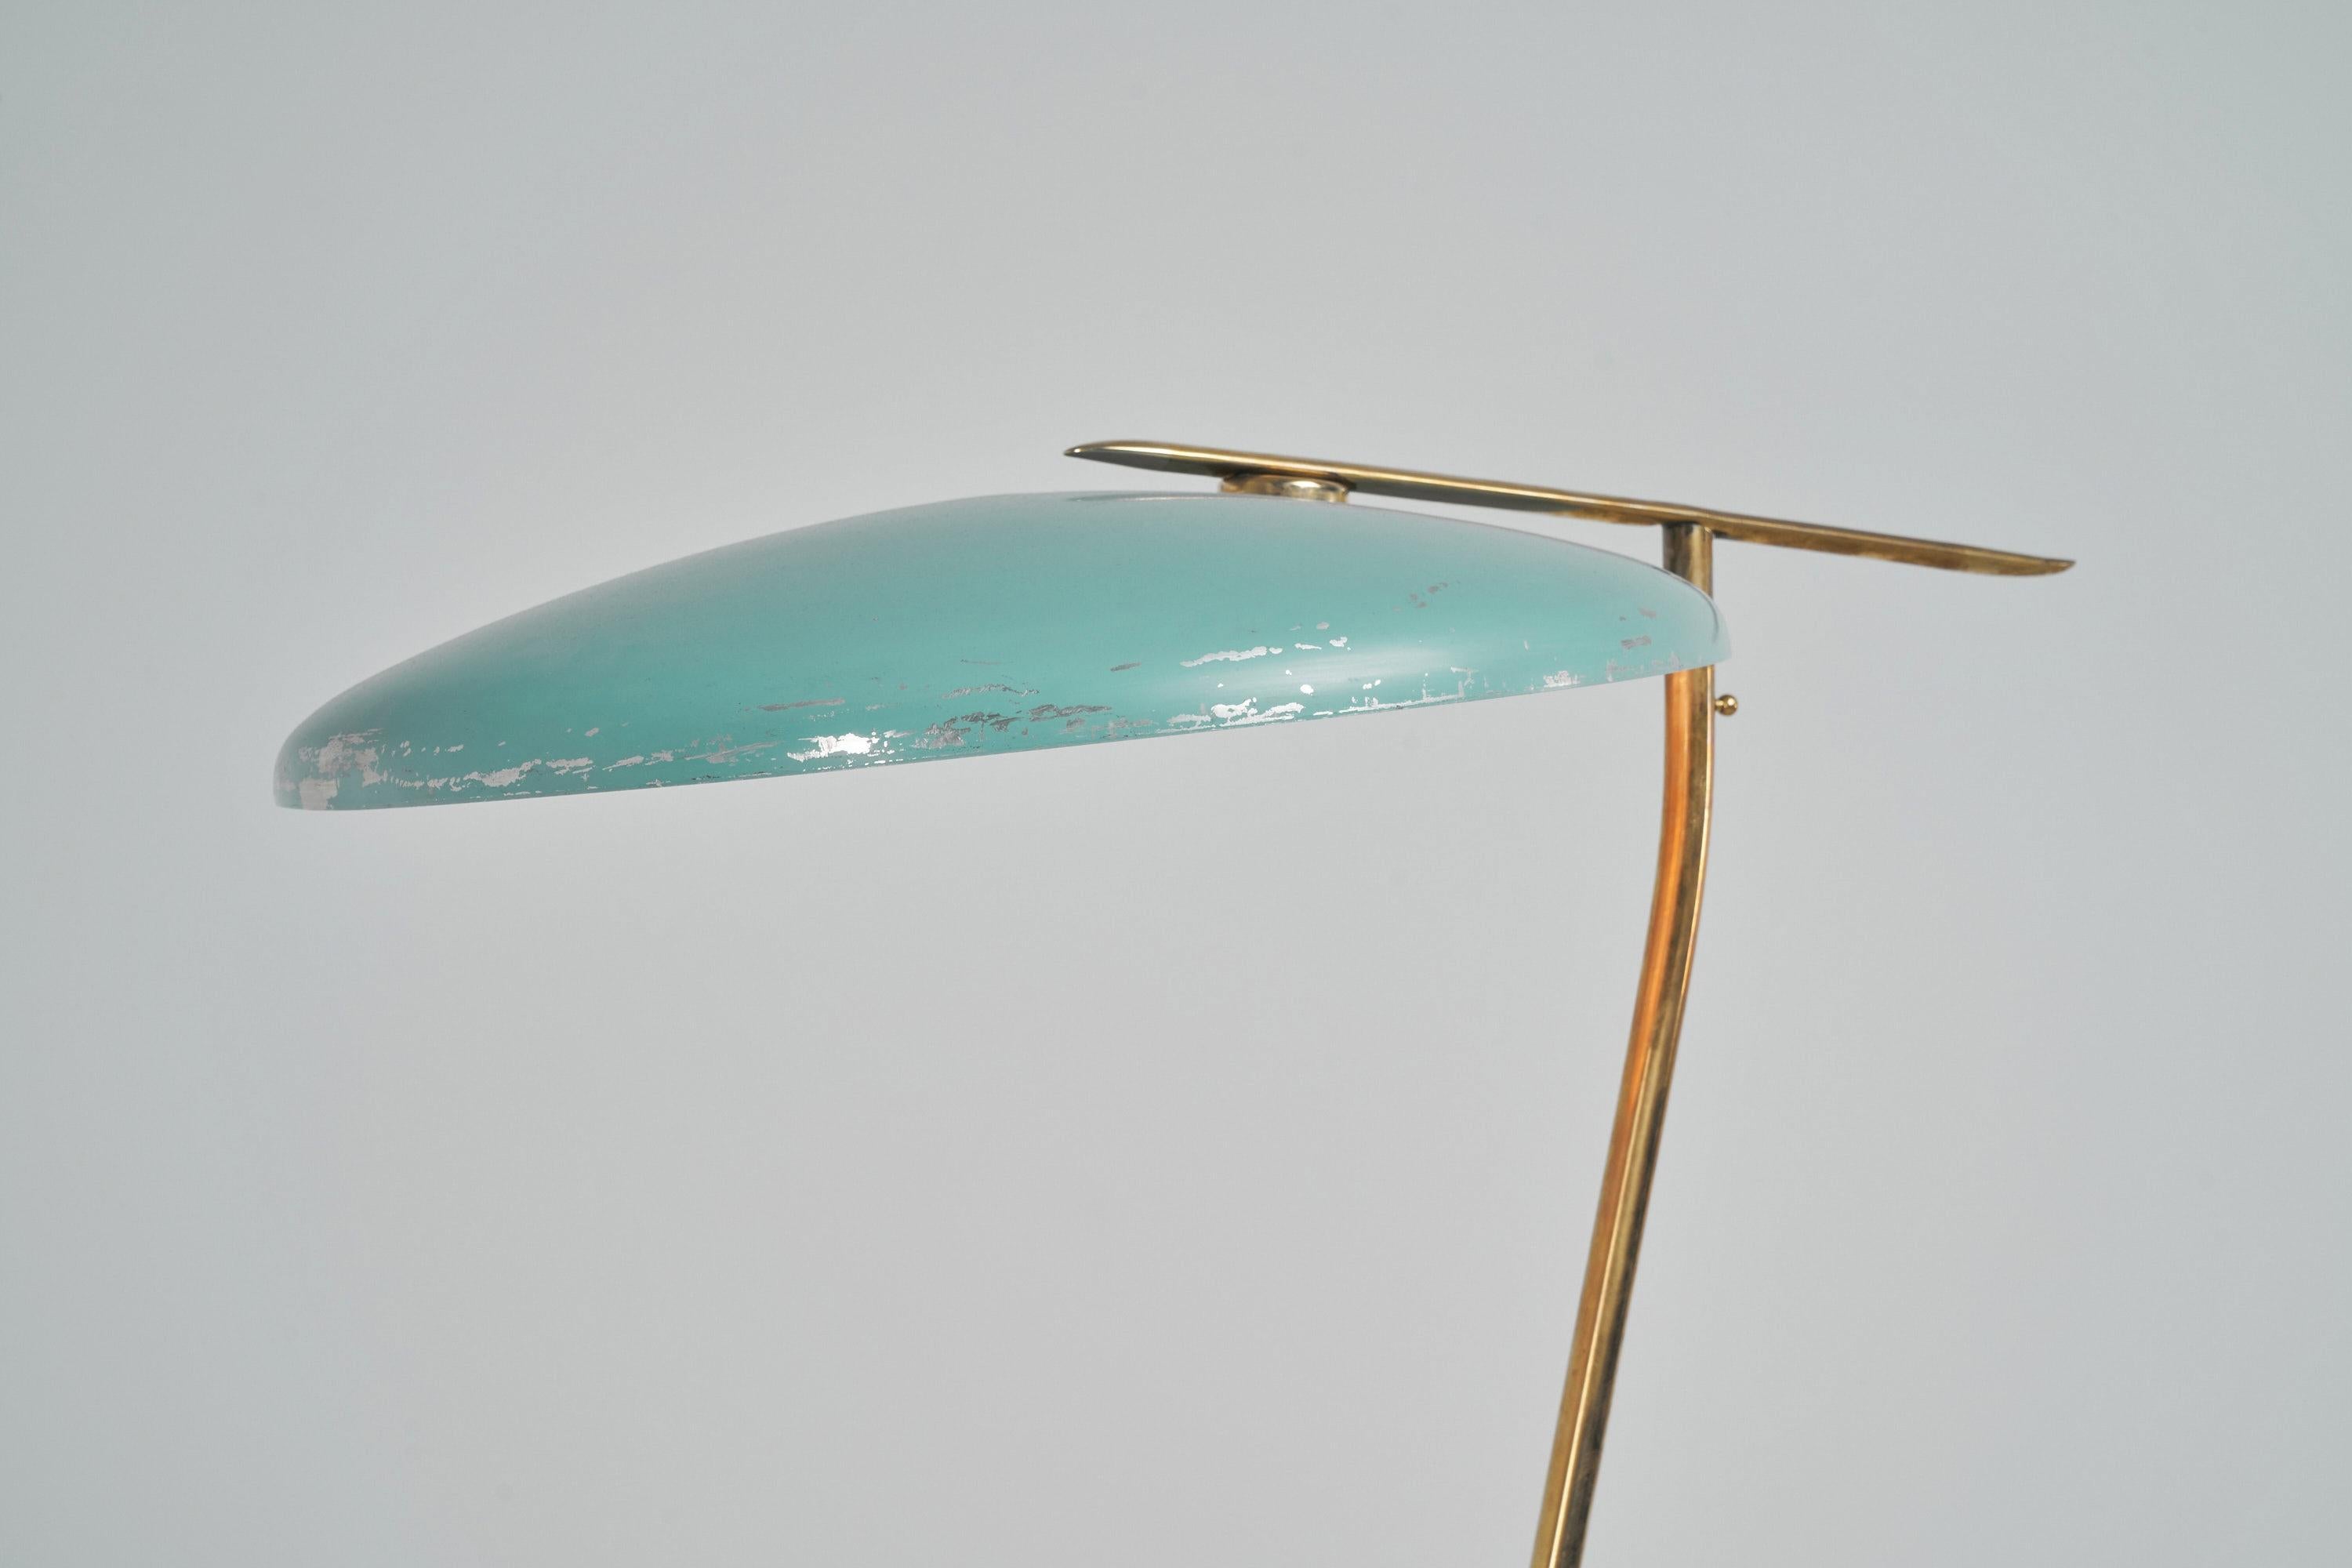 Seltene große Stehleuchte, entworfen von Oscar Torlasco und hergestellt von Lumi, Italien 1950. Diese großformatige Stehleuchte hat schöne Proportionen und eine interessante asymmetrische Form. Der große Messingsockel ist leicht gebogen, damit er